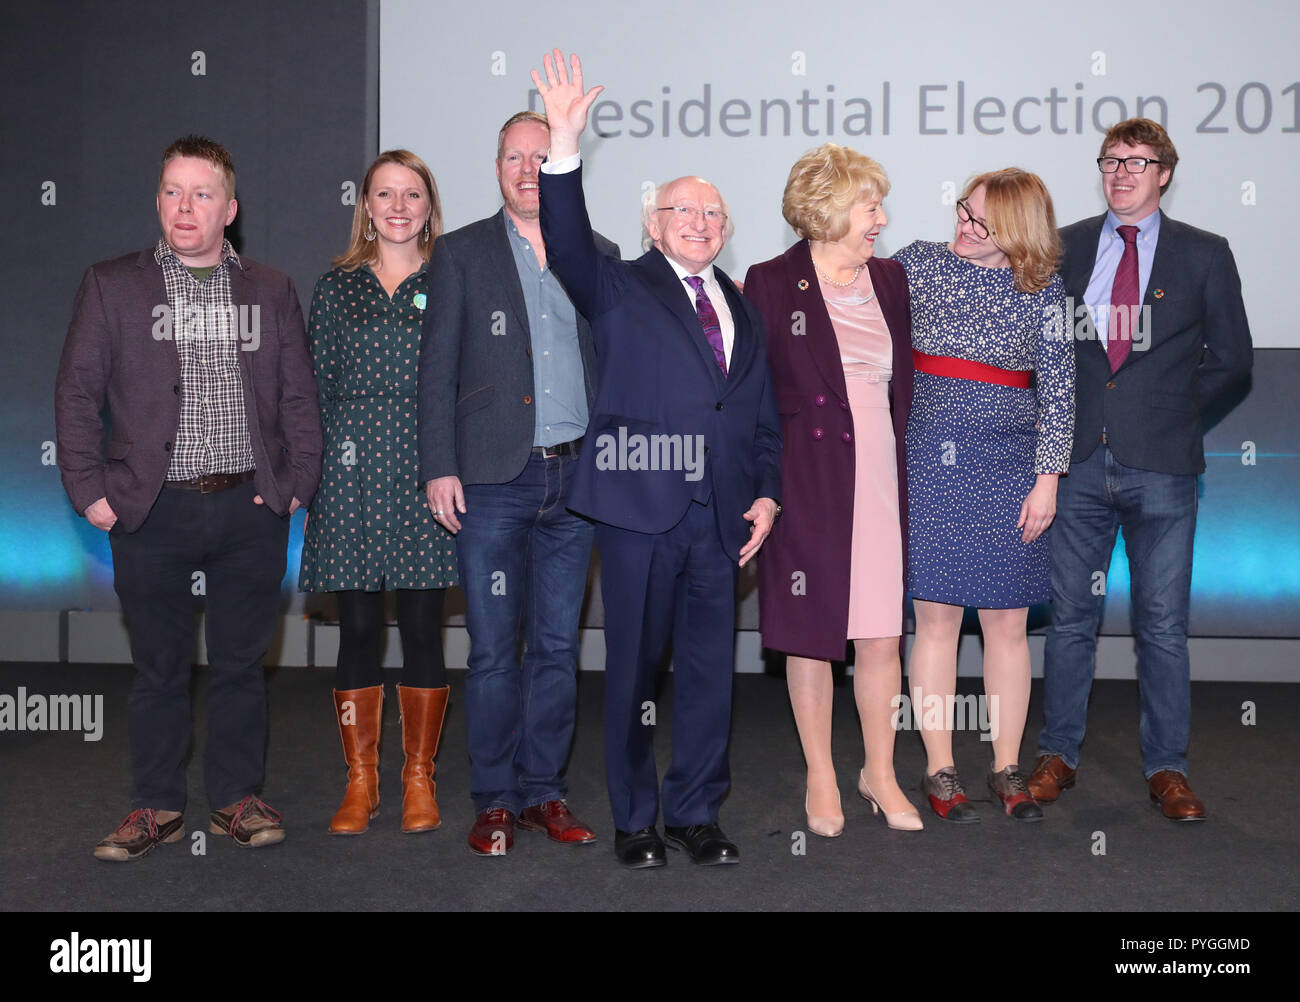 Michael D Higgins mit seiner Familie in Dublin Castle, nachdem er als Sieger der Präsidentschaftswahlen in Irland Wahl bekannt gegeben wurde. Stockfoto